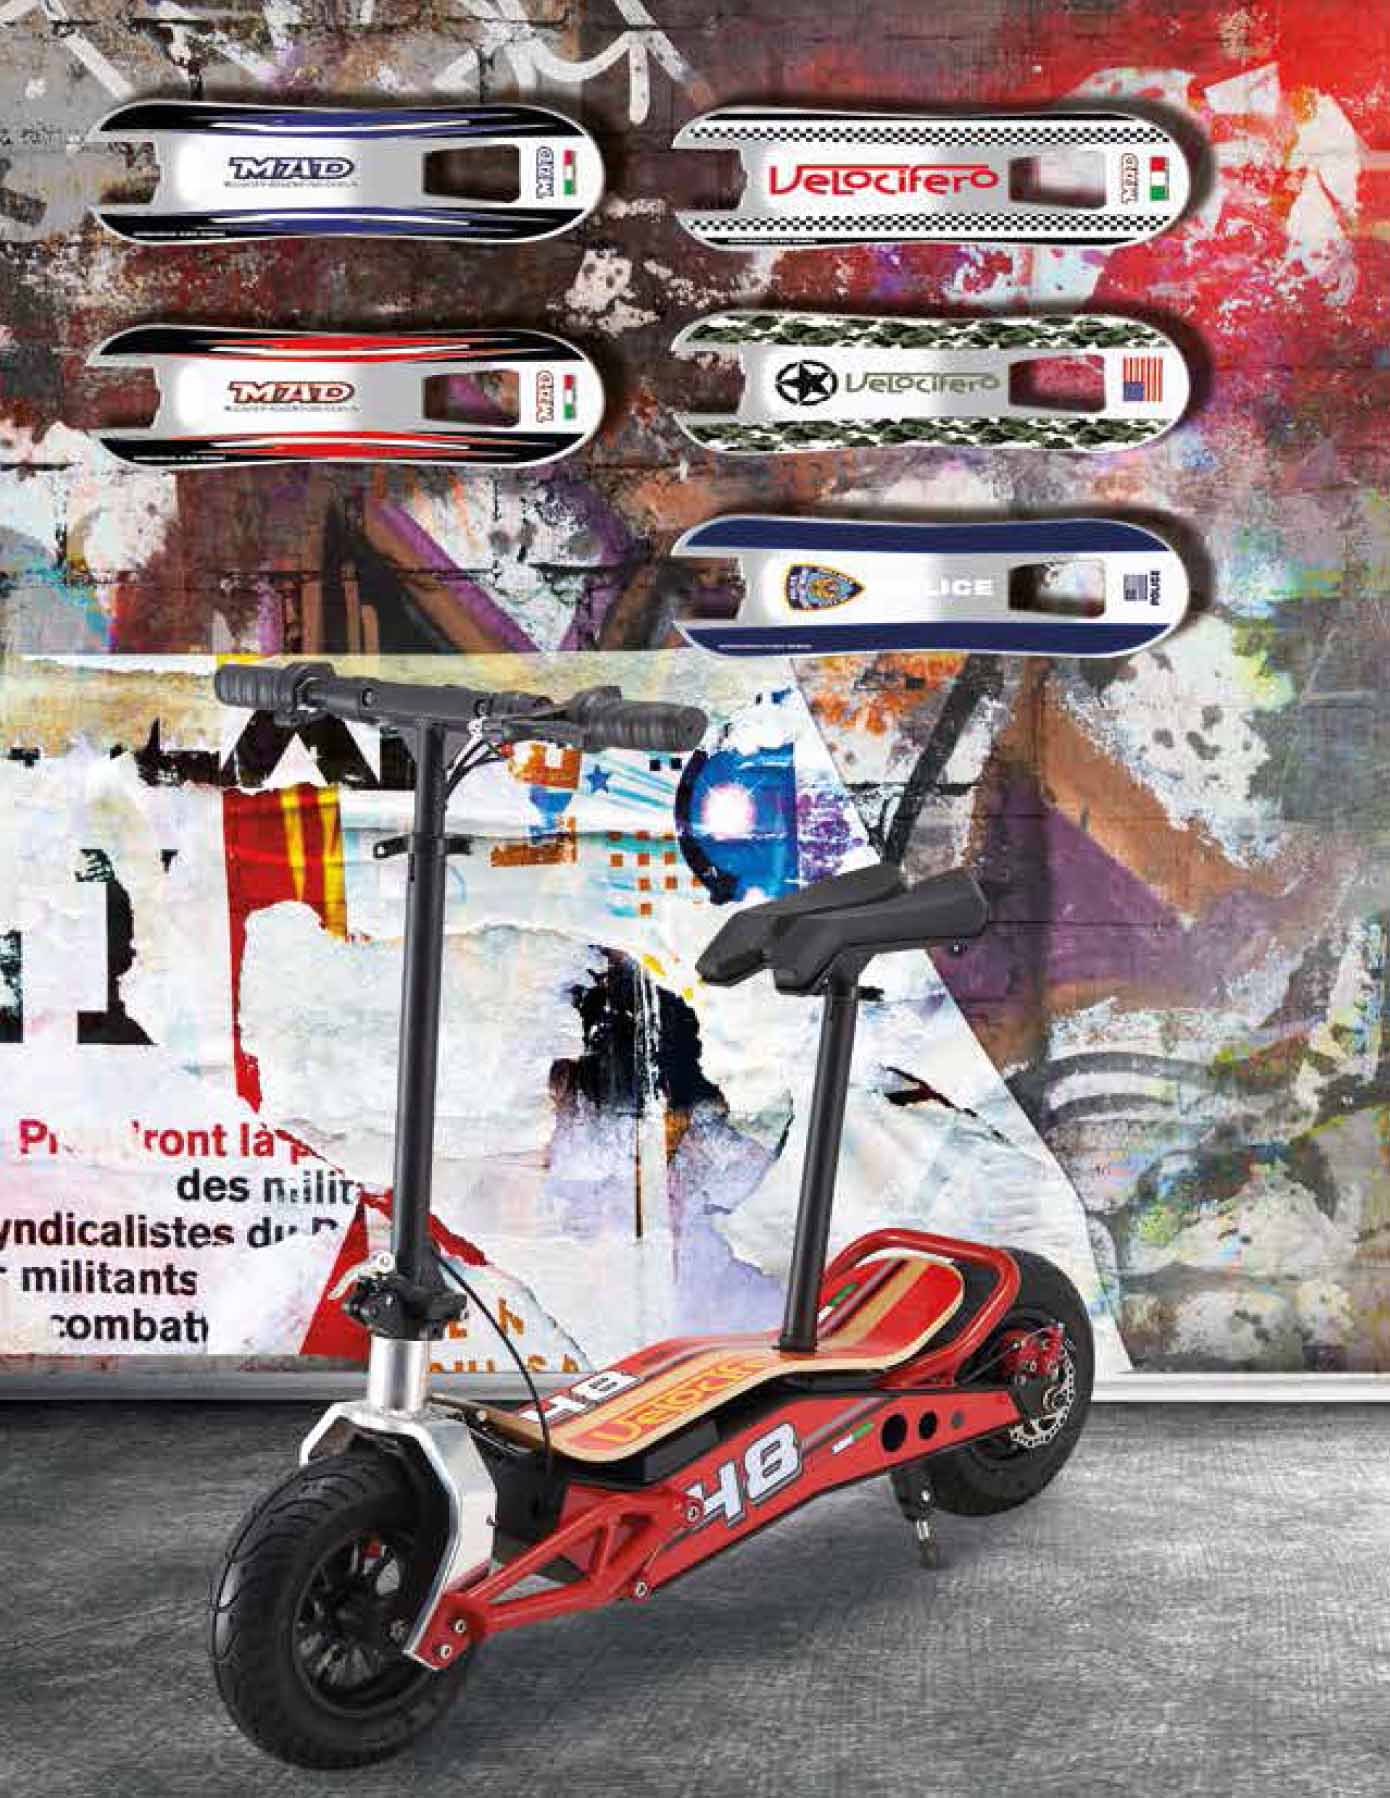 MAD- electric scooter velocifero no highper high-per - China’s Maiway Industry model-mini-mad-canton-fair-alessandro-tartarini-velocifero-collection